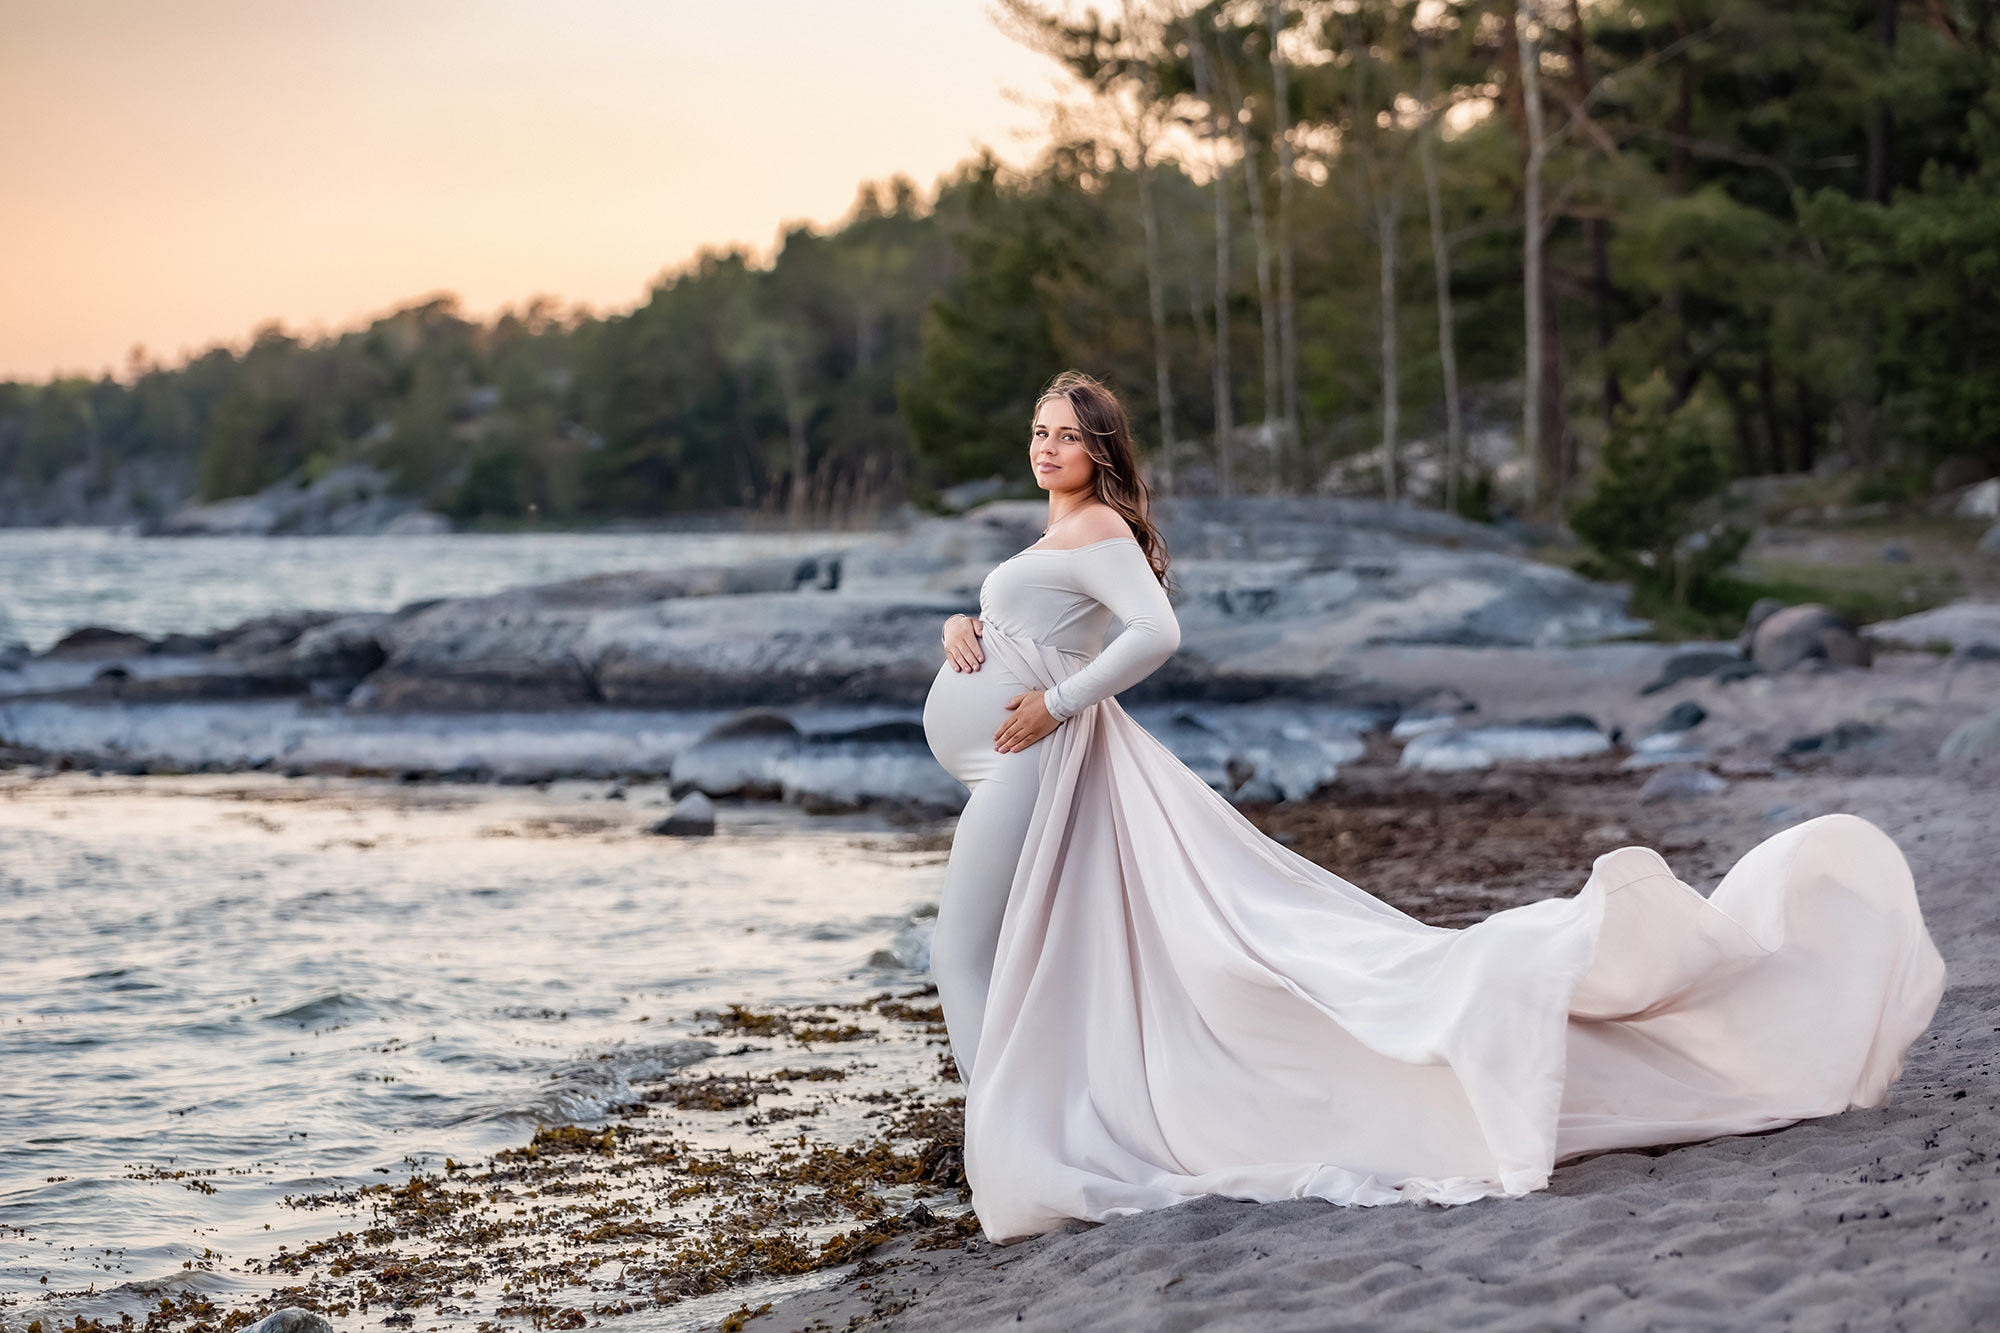 En vacker gravid kvinna står på en sandstrand i en beige gravidklänning som flyger i vinden. I bakgrunden syns klippor och en skog.